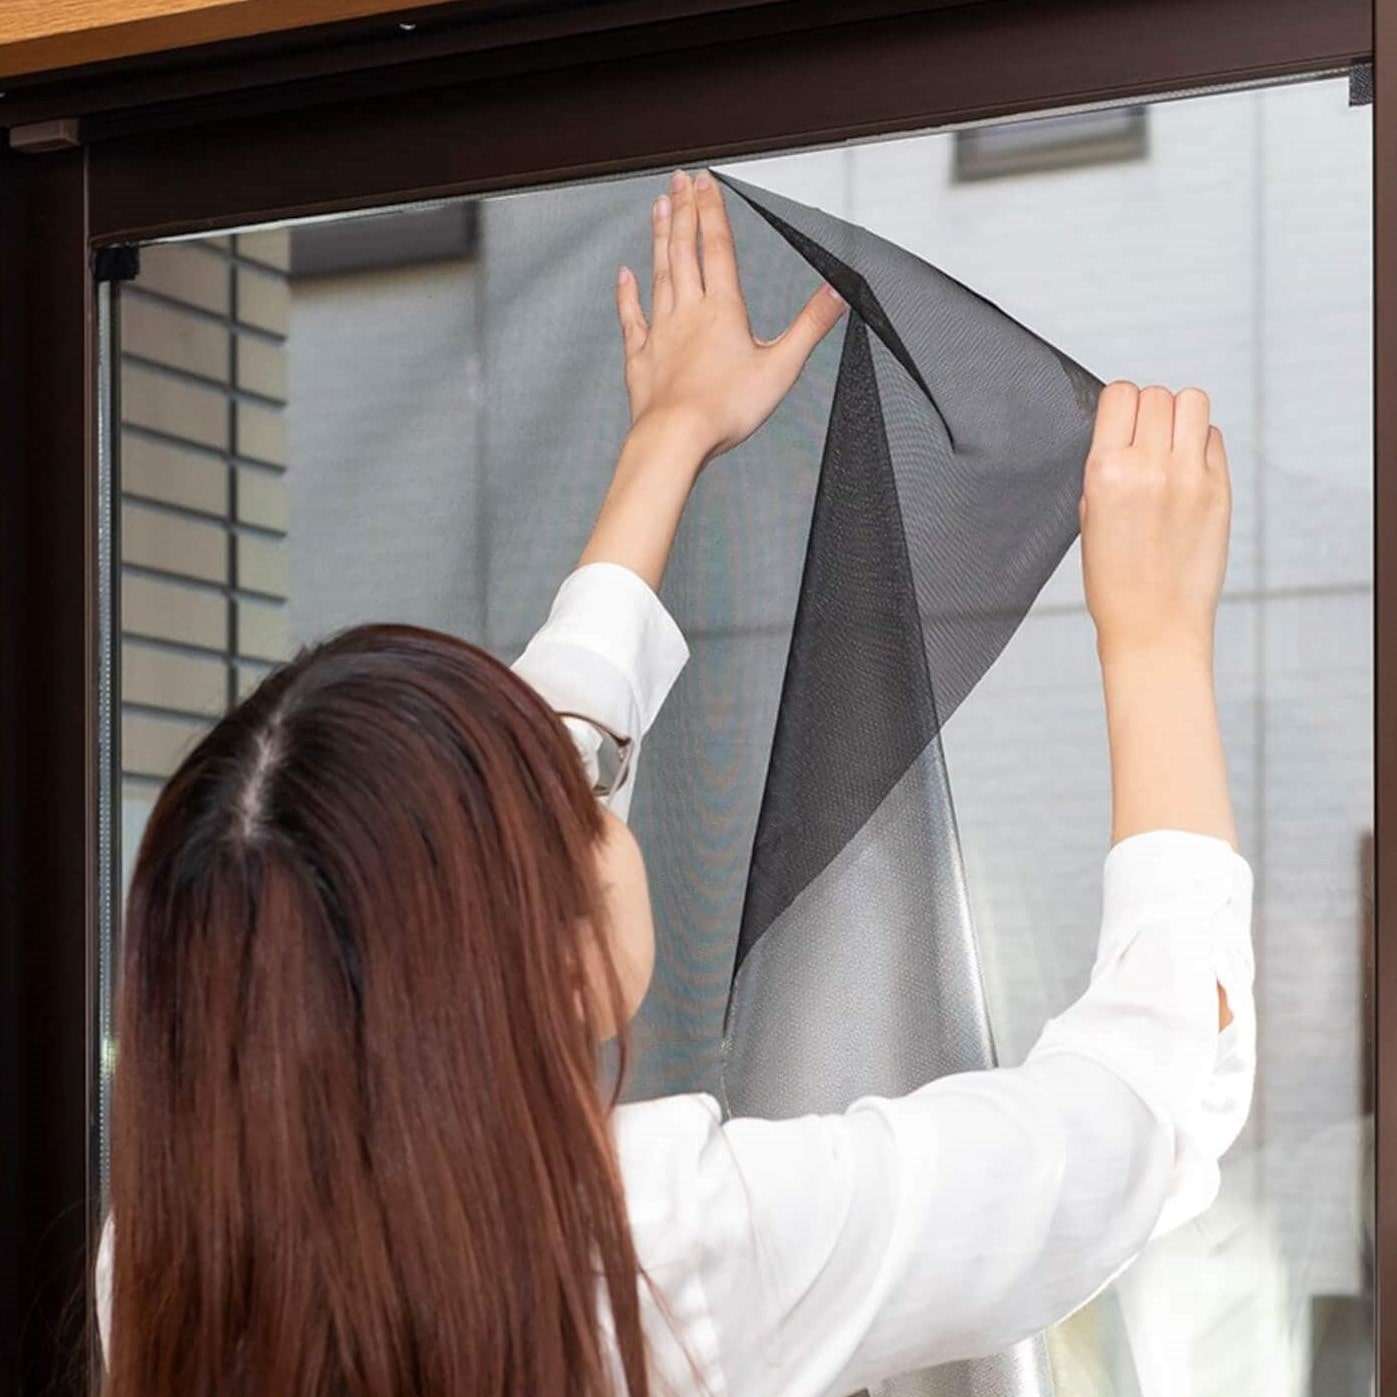 遮熱クールアップ 特典 セキスイ 遮光シート 窓ガラス用 (100cm×200cm) 4枚セット 熱中症対策 遮熱フィルム